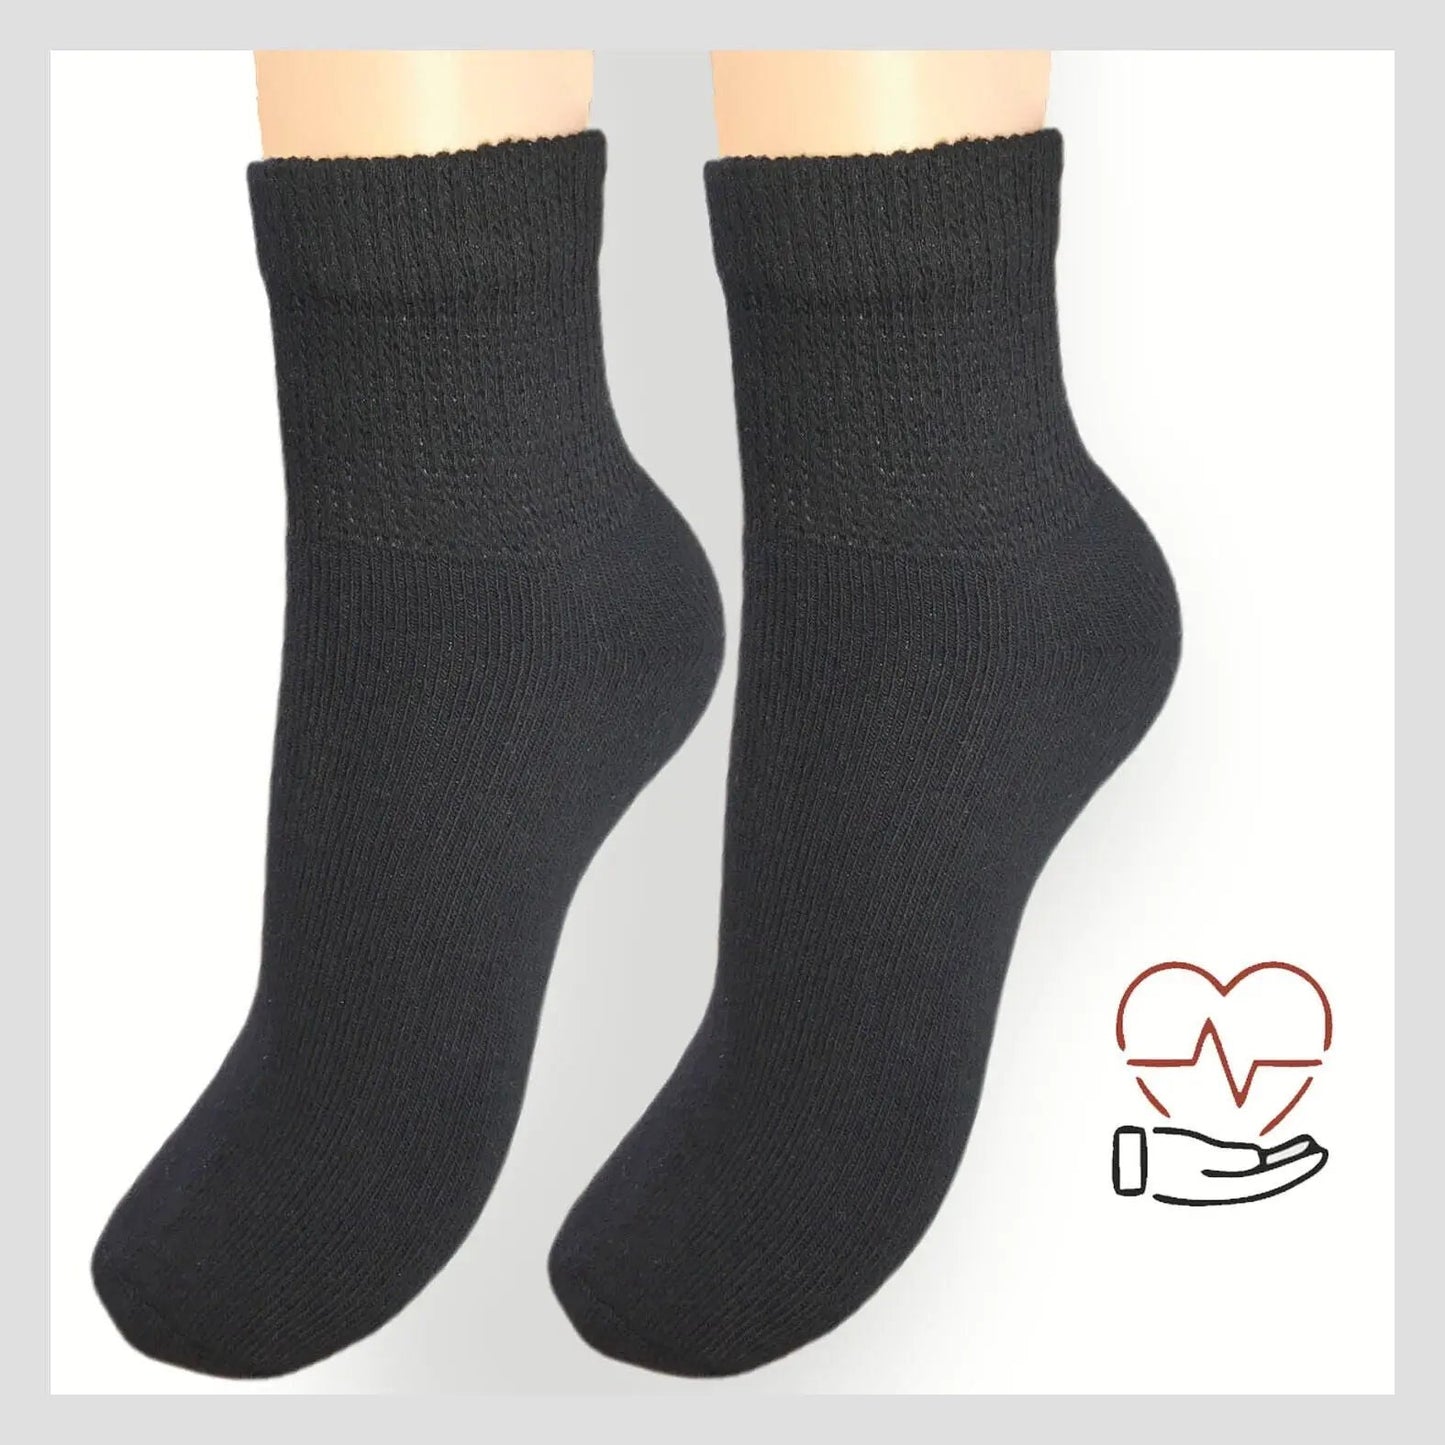 3 o 6 pares de calcetines cortos blancos o negros diseñados para diabéticos